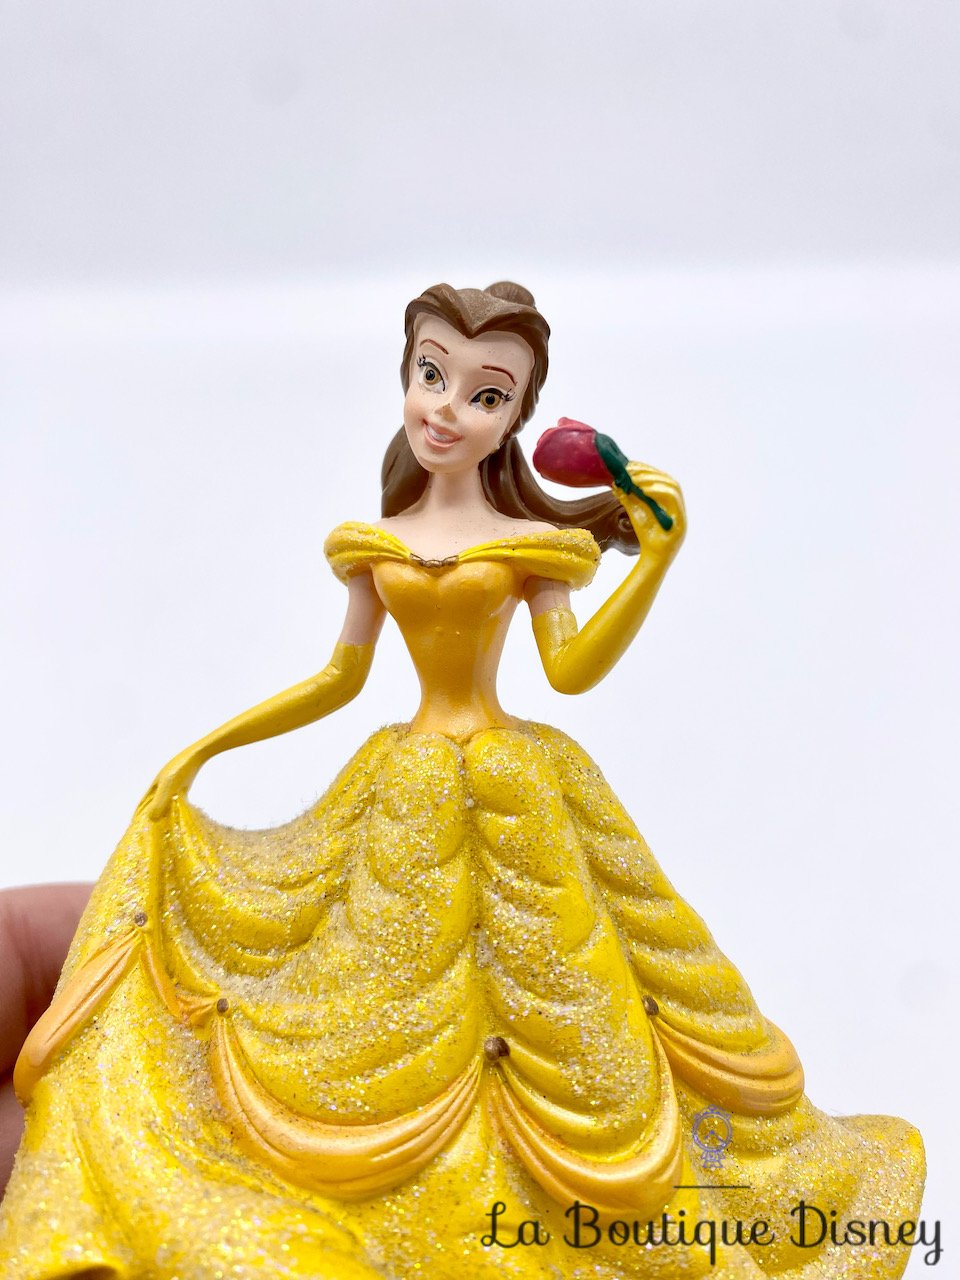 figurine-résine-belle-la-belle-et-la-bete-disneyland-disney-princesse-paillettes-12-cm-5